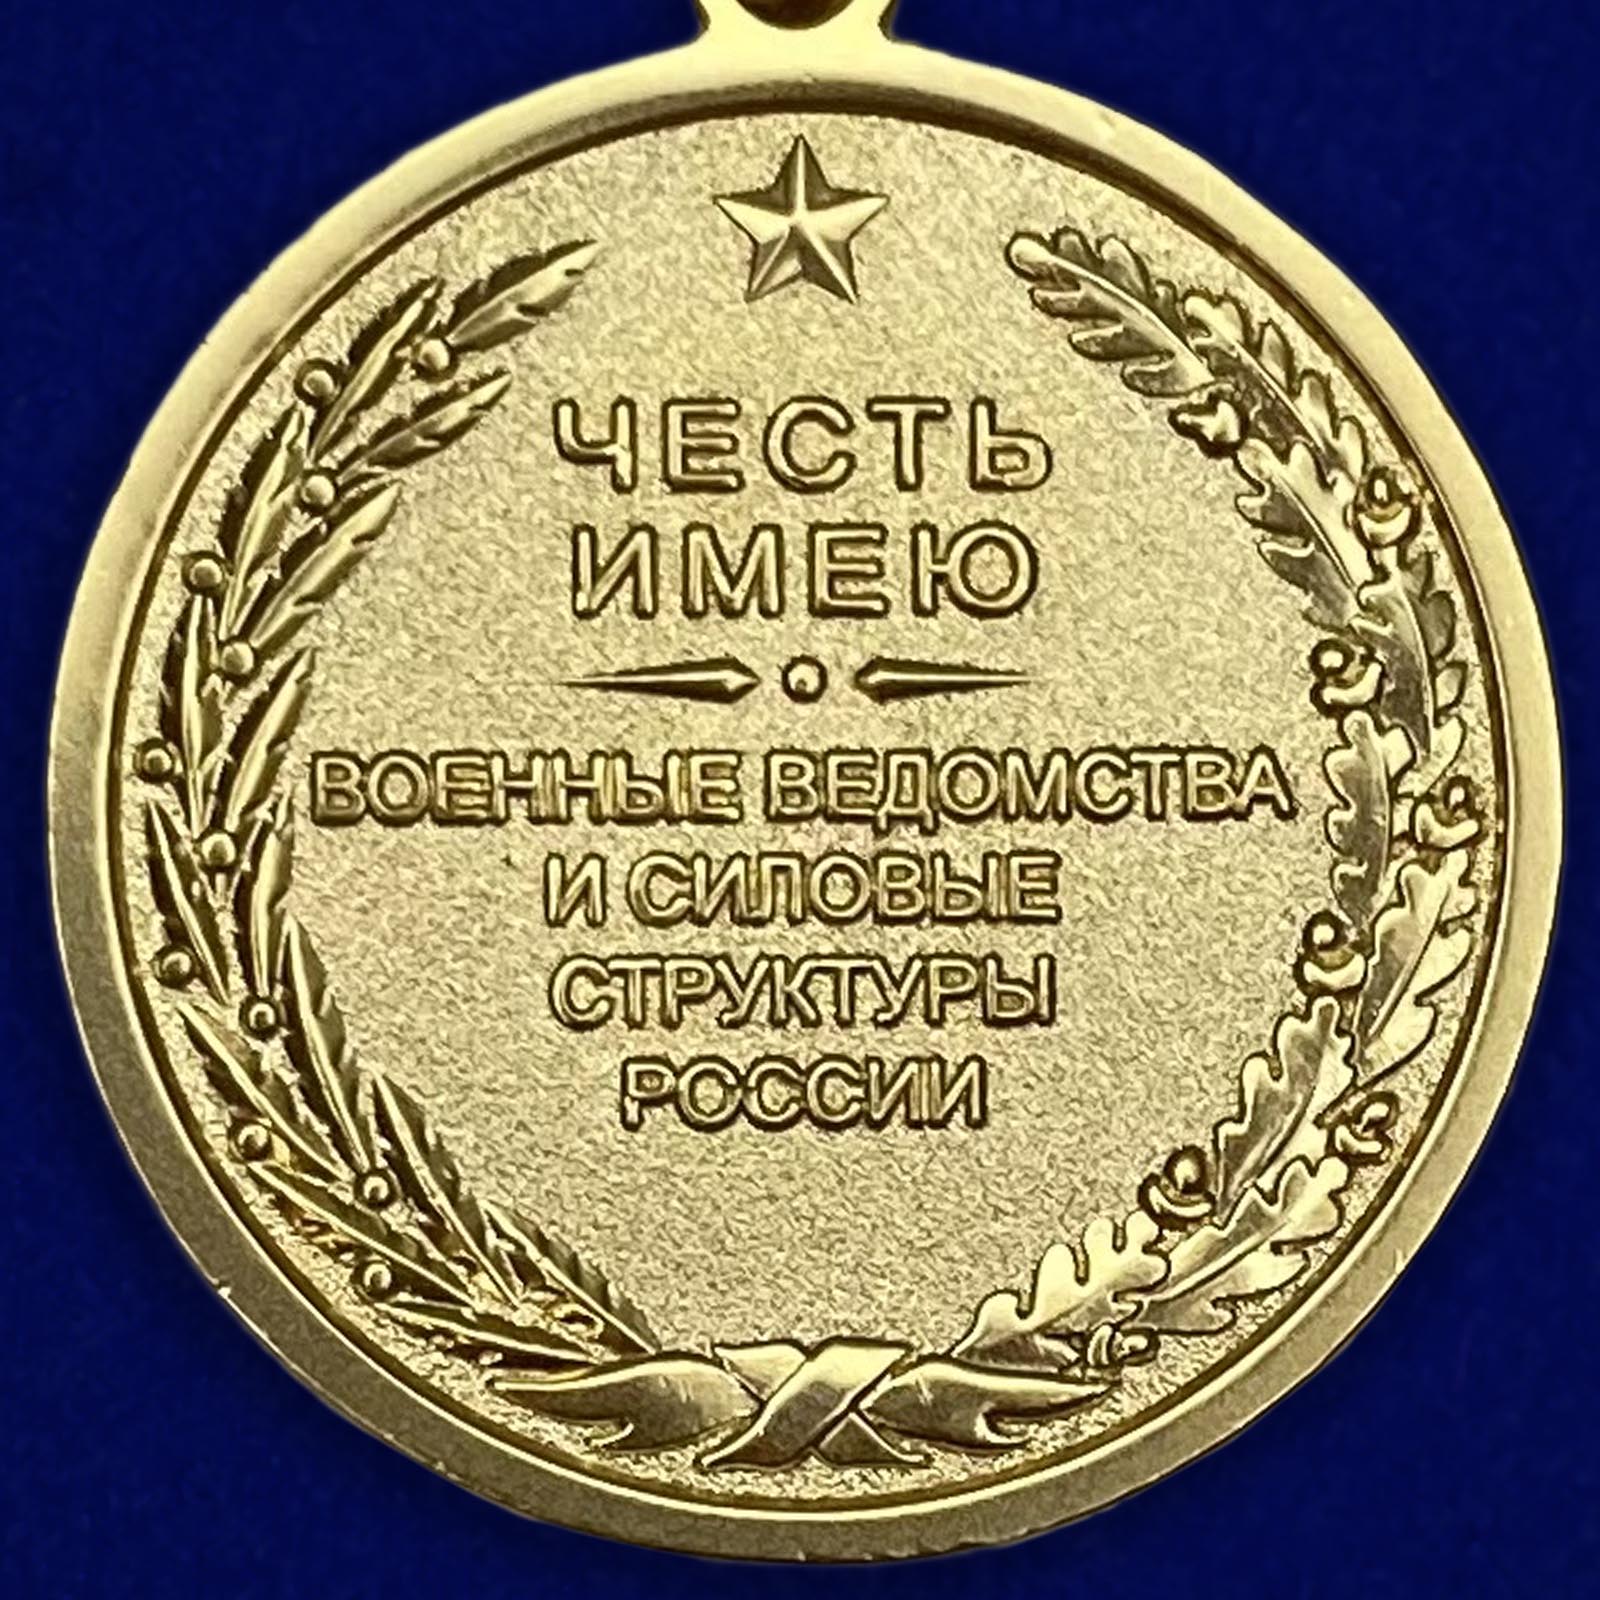 Описание медали "Воинское братство"